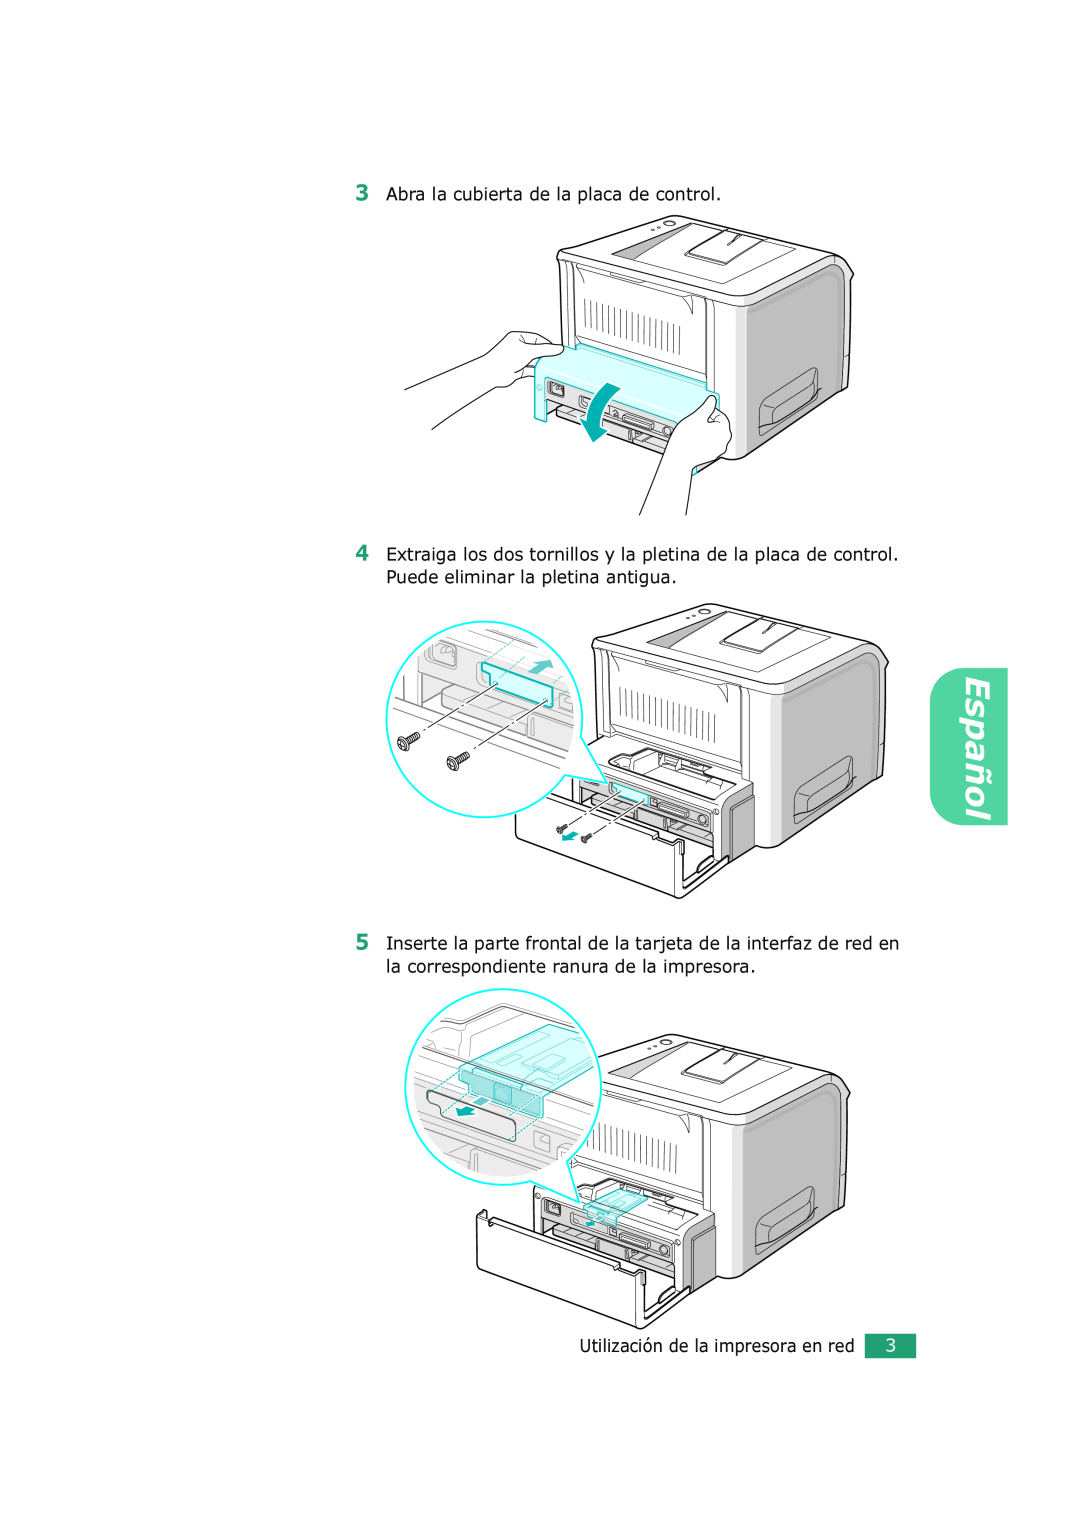 Xerox 3150 manual Español, Abra la cubierta de la placa de control, Utilización de la impresora en red 